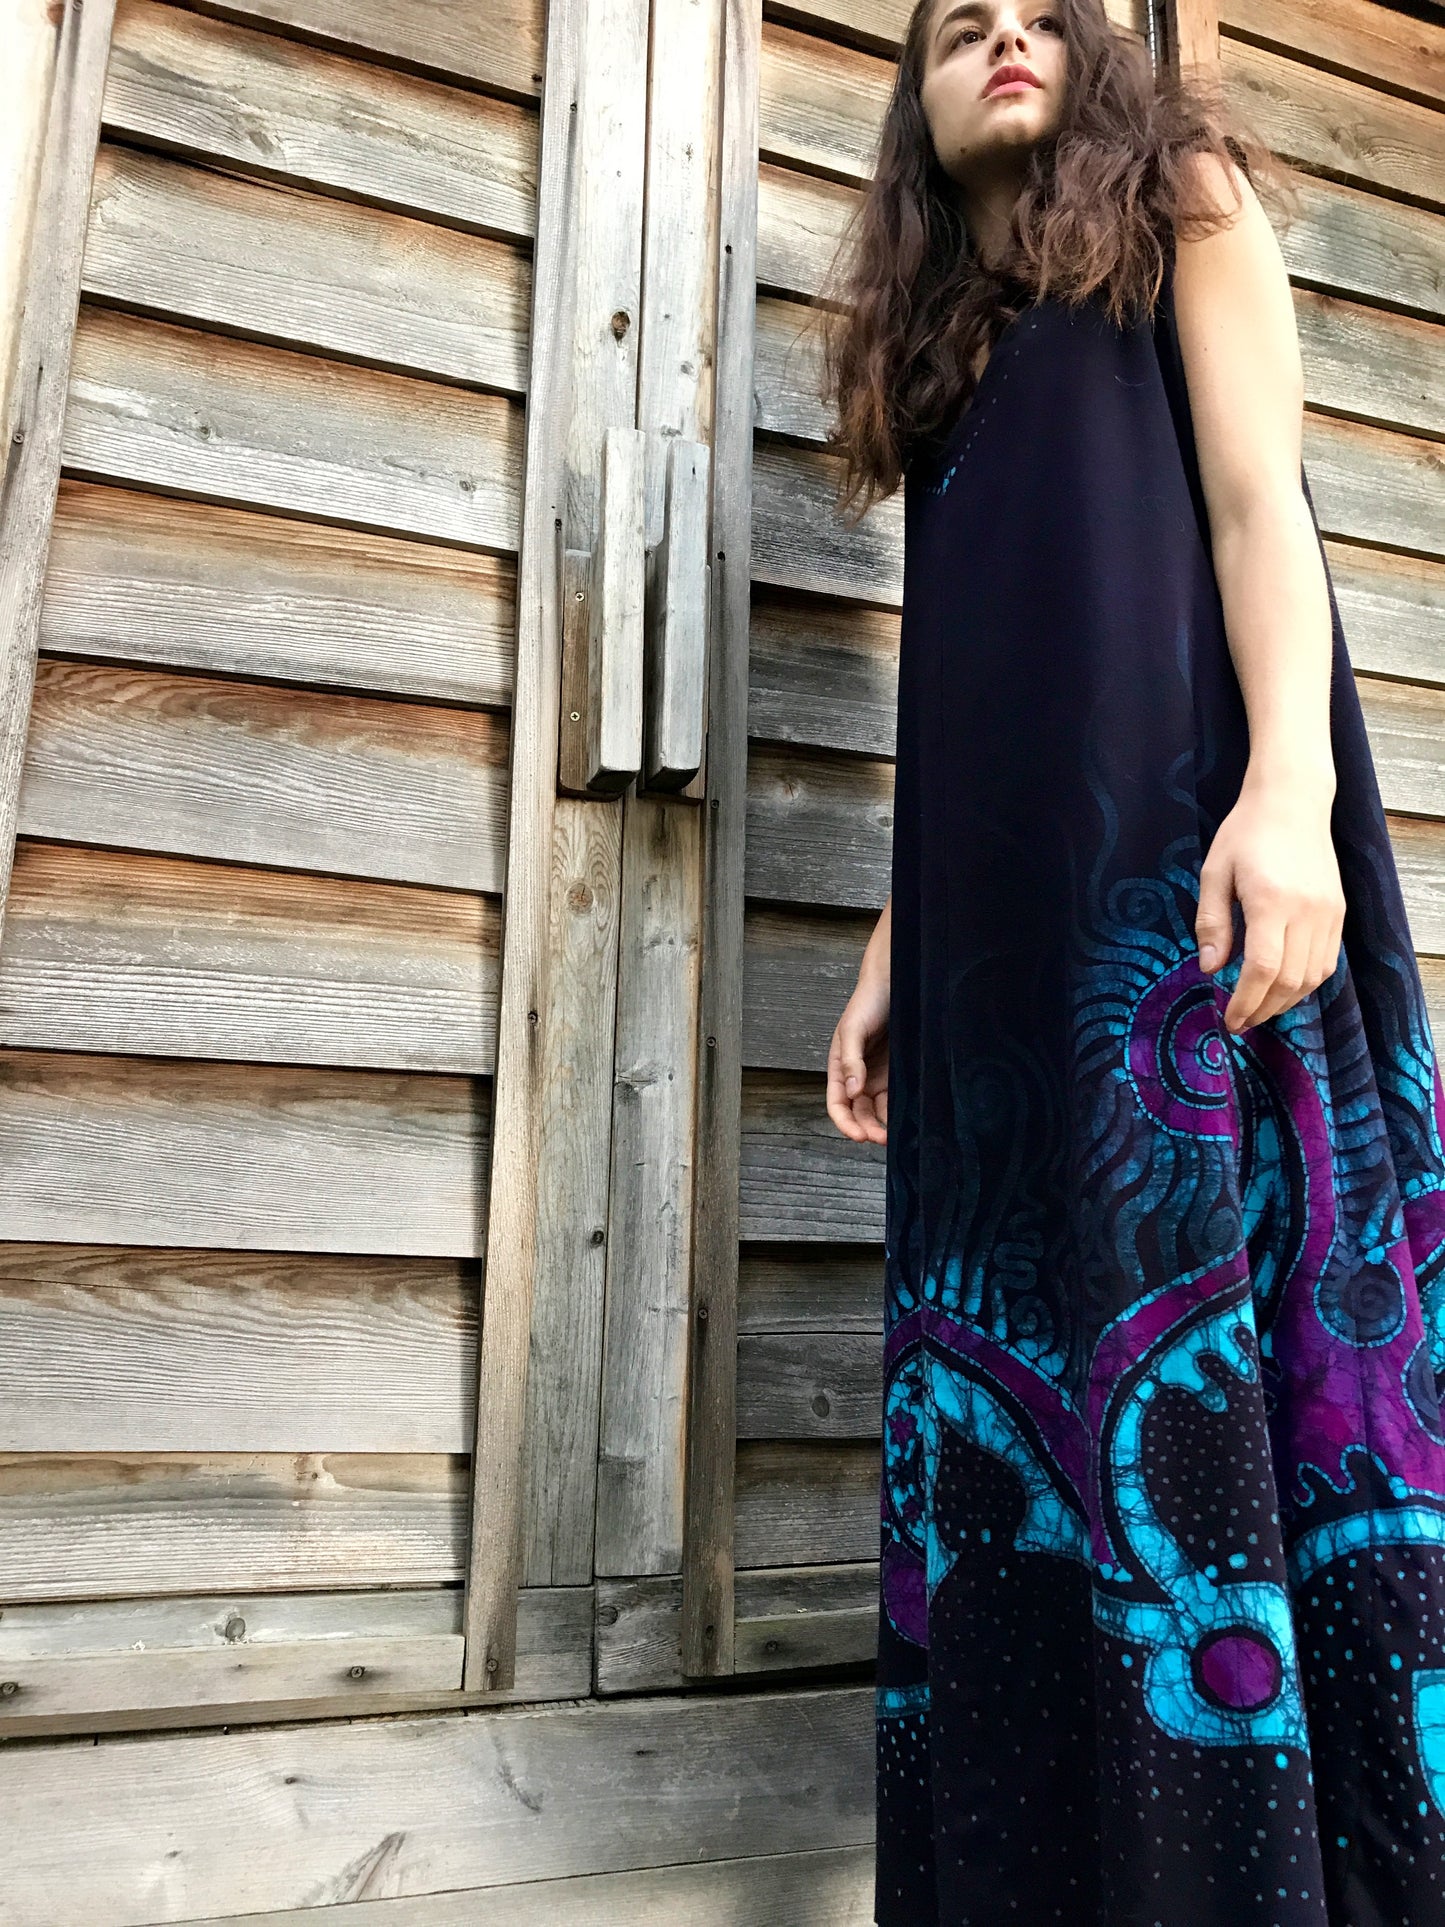 Deep Purple Sea Of Dreams Organic Cotton Batik Dress - Size XL